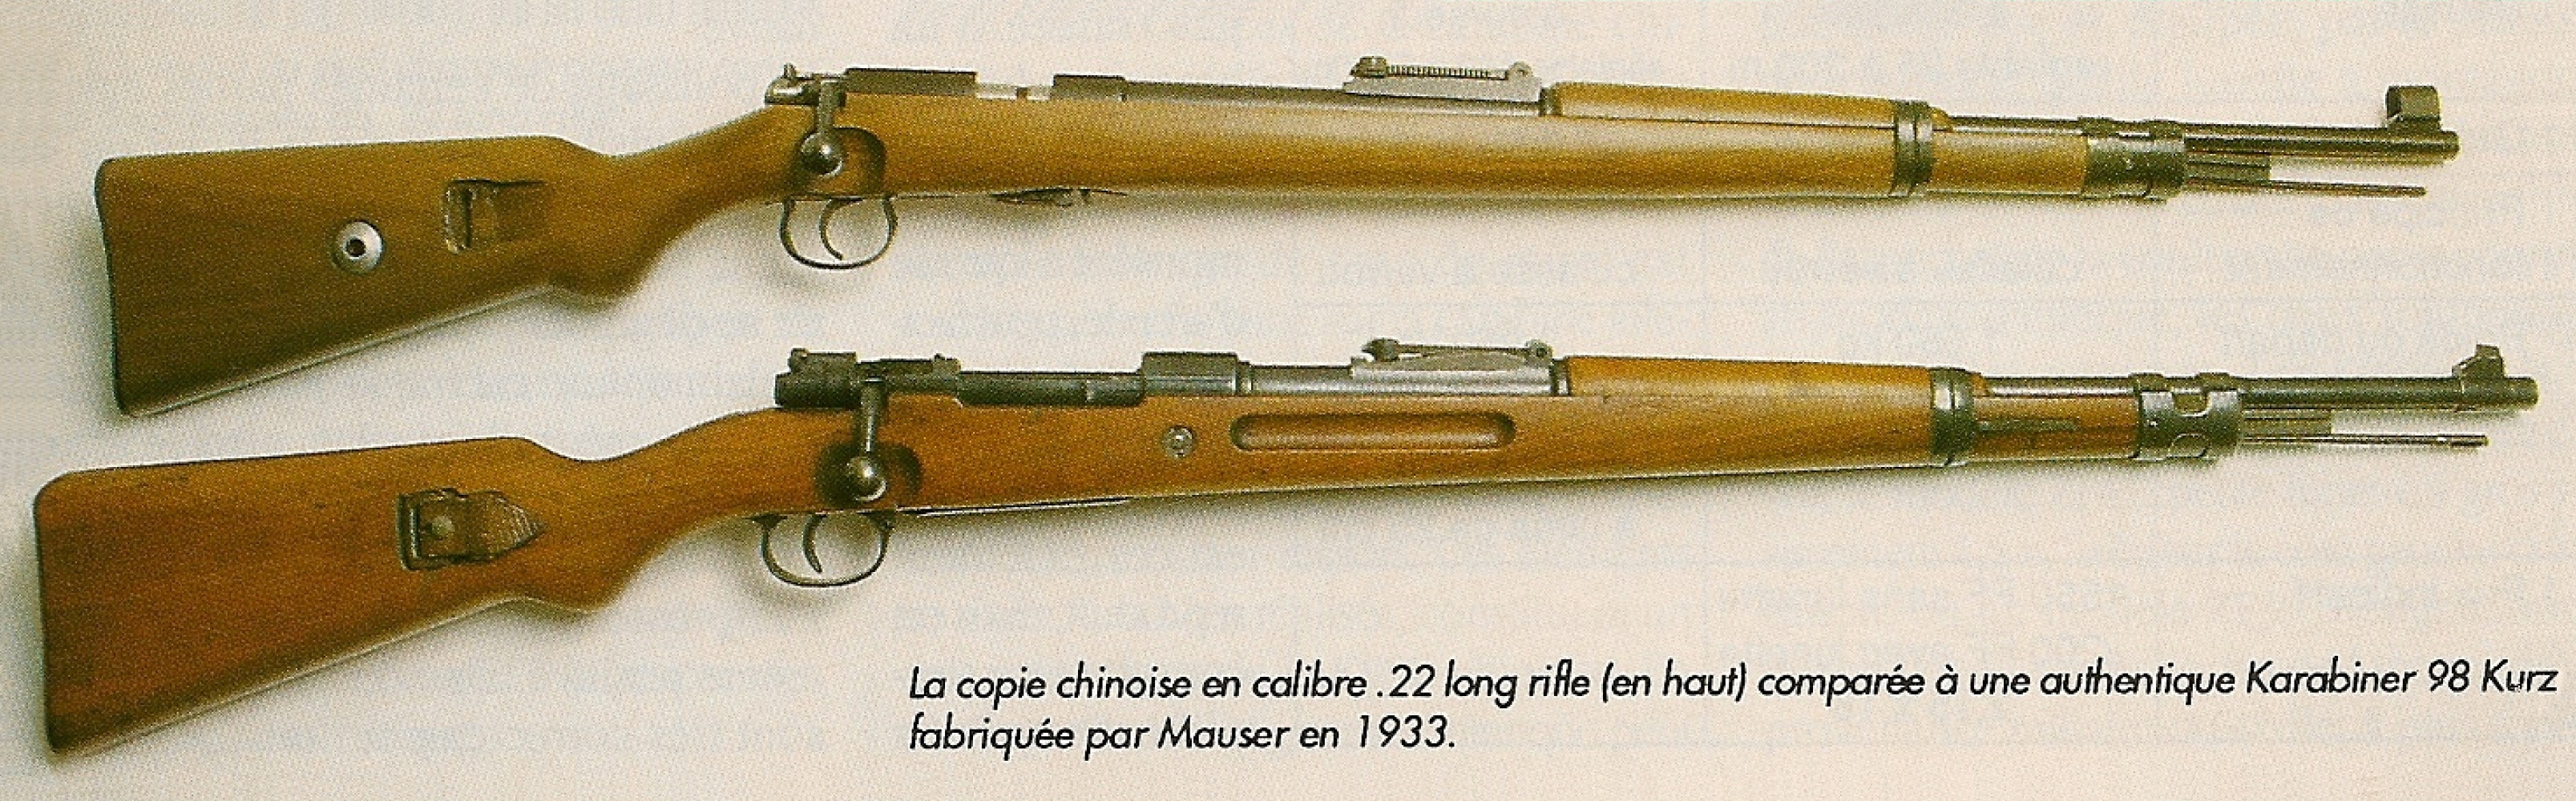 Comparaison entre la copie chinoise de petit calibre et une authentique K98K de calibre 7,92 mm Mauser fabriquée par la Waffenfabrik Mauser en 1933.